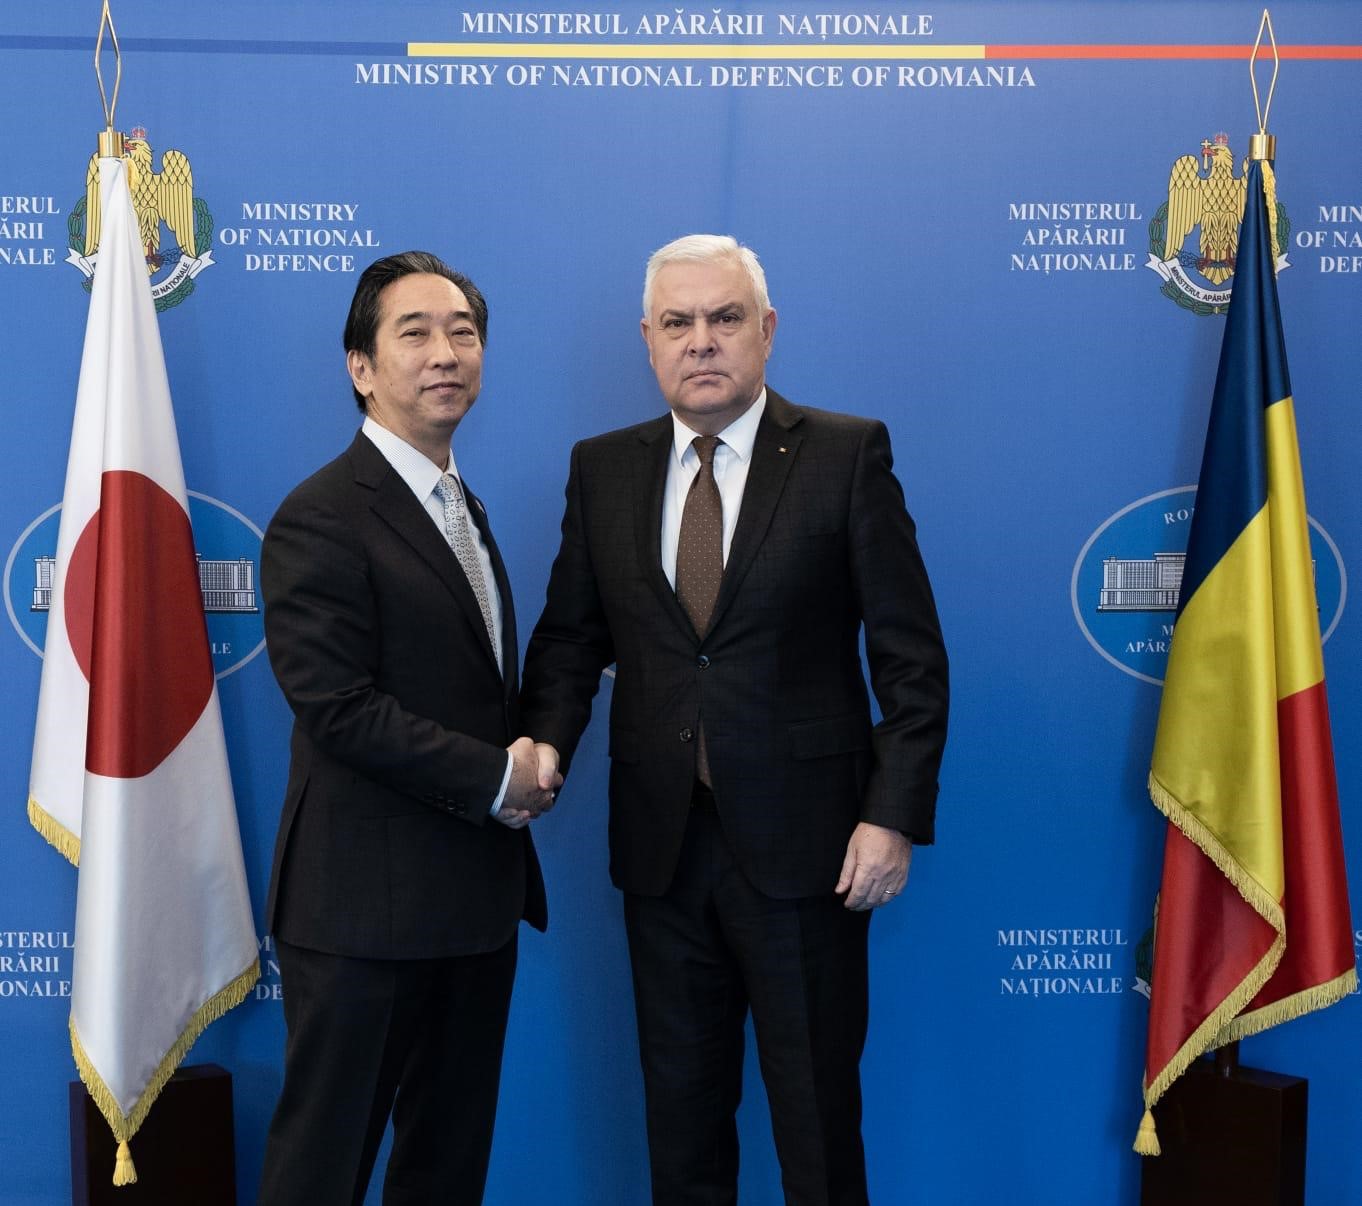 Întrevederea ministrului apărării naționale cu ambasadorul Japoniei la București